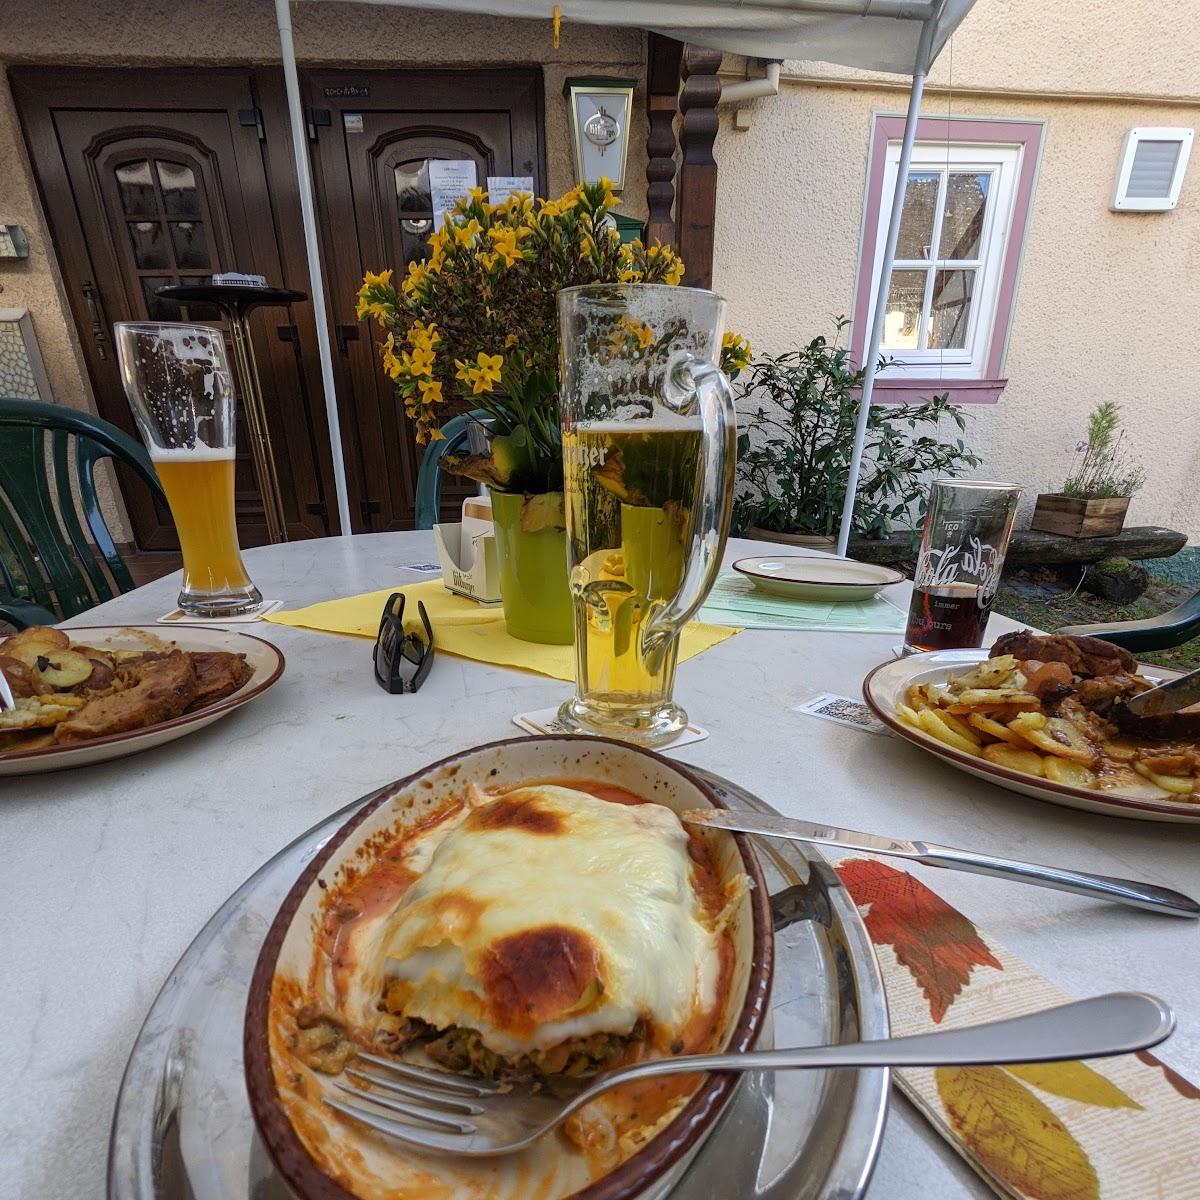 Restaurant "Gasthaus zur Linde" in Lorch